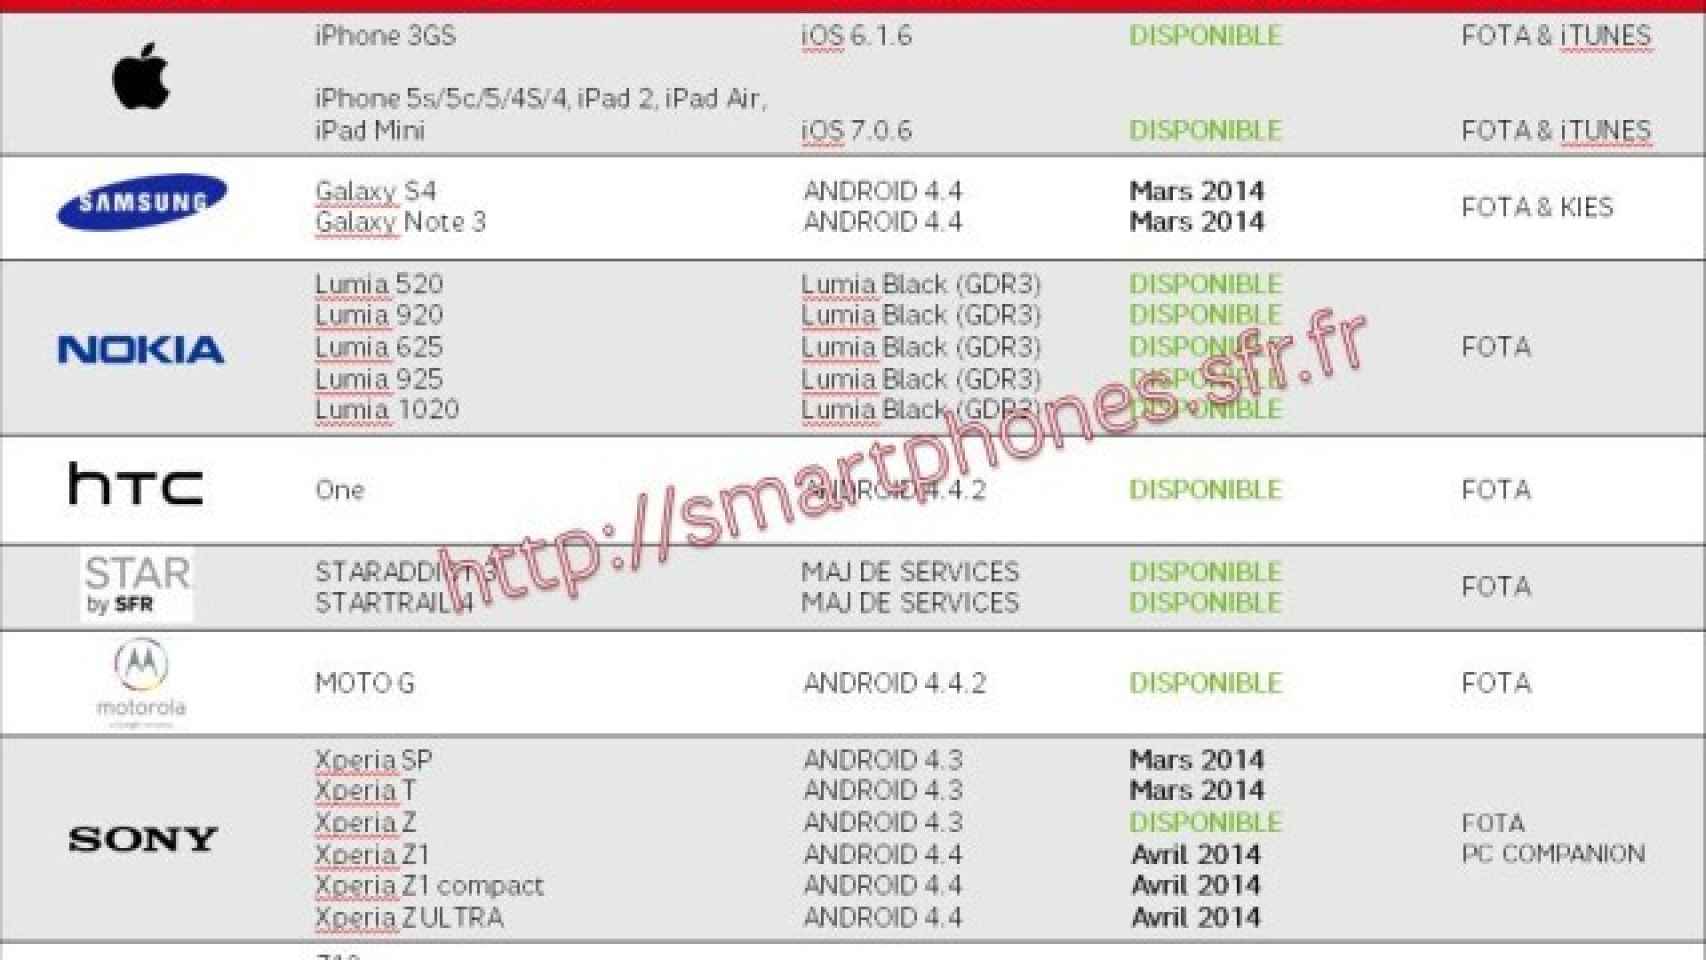 Los Xperia Z1, Ultra y Z1 Compact se actualizarán a Android 4.4.2 KitKat en Abril